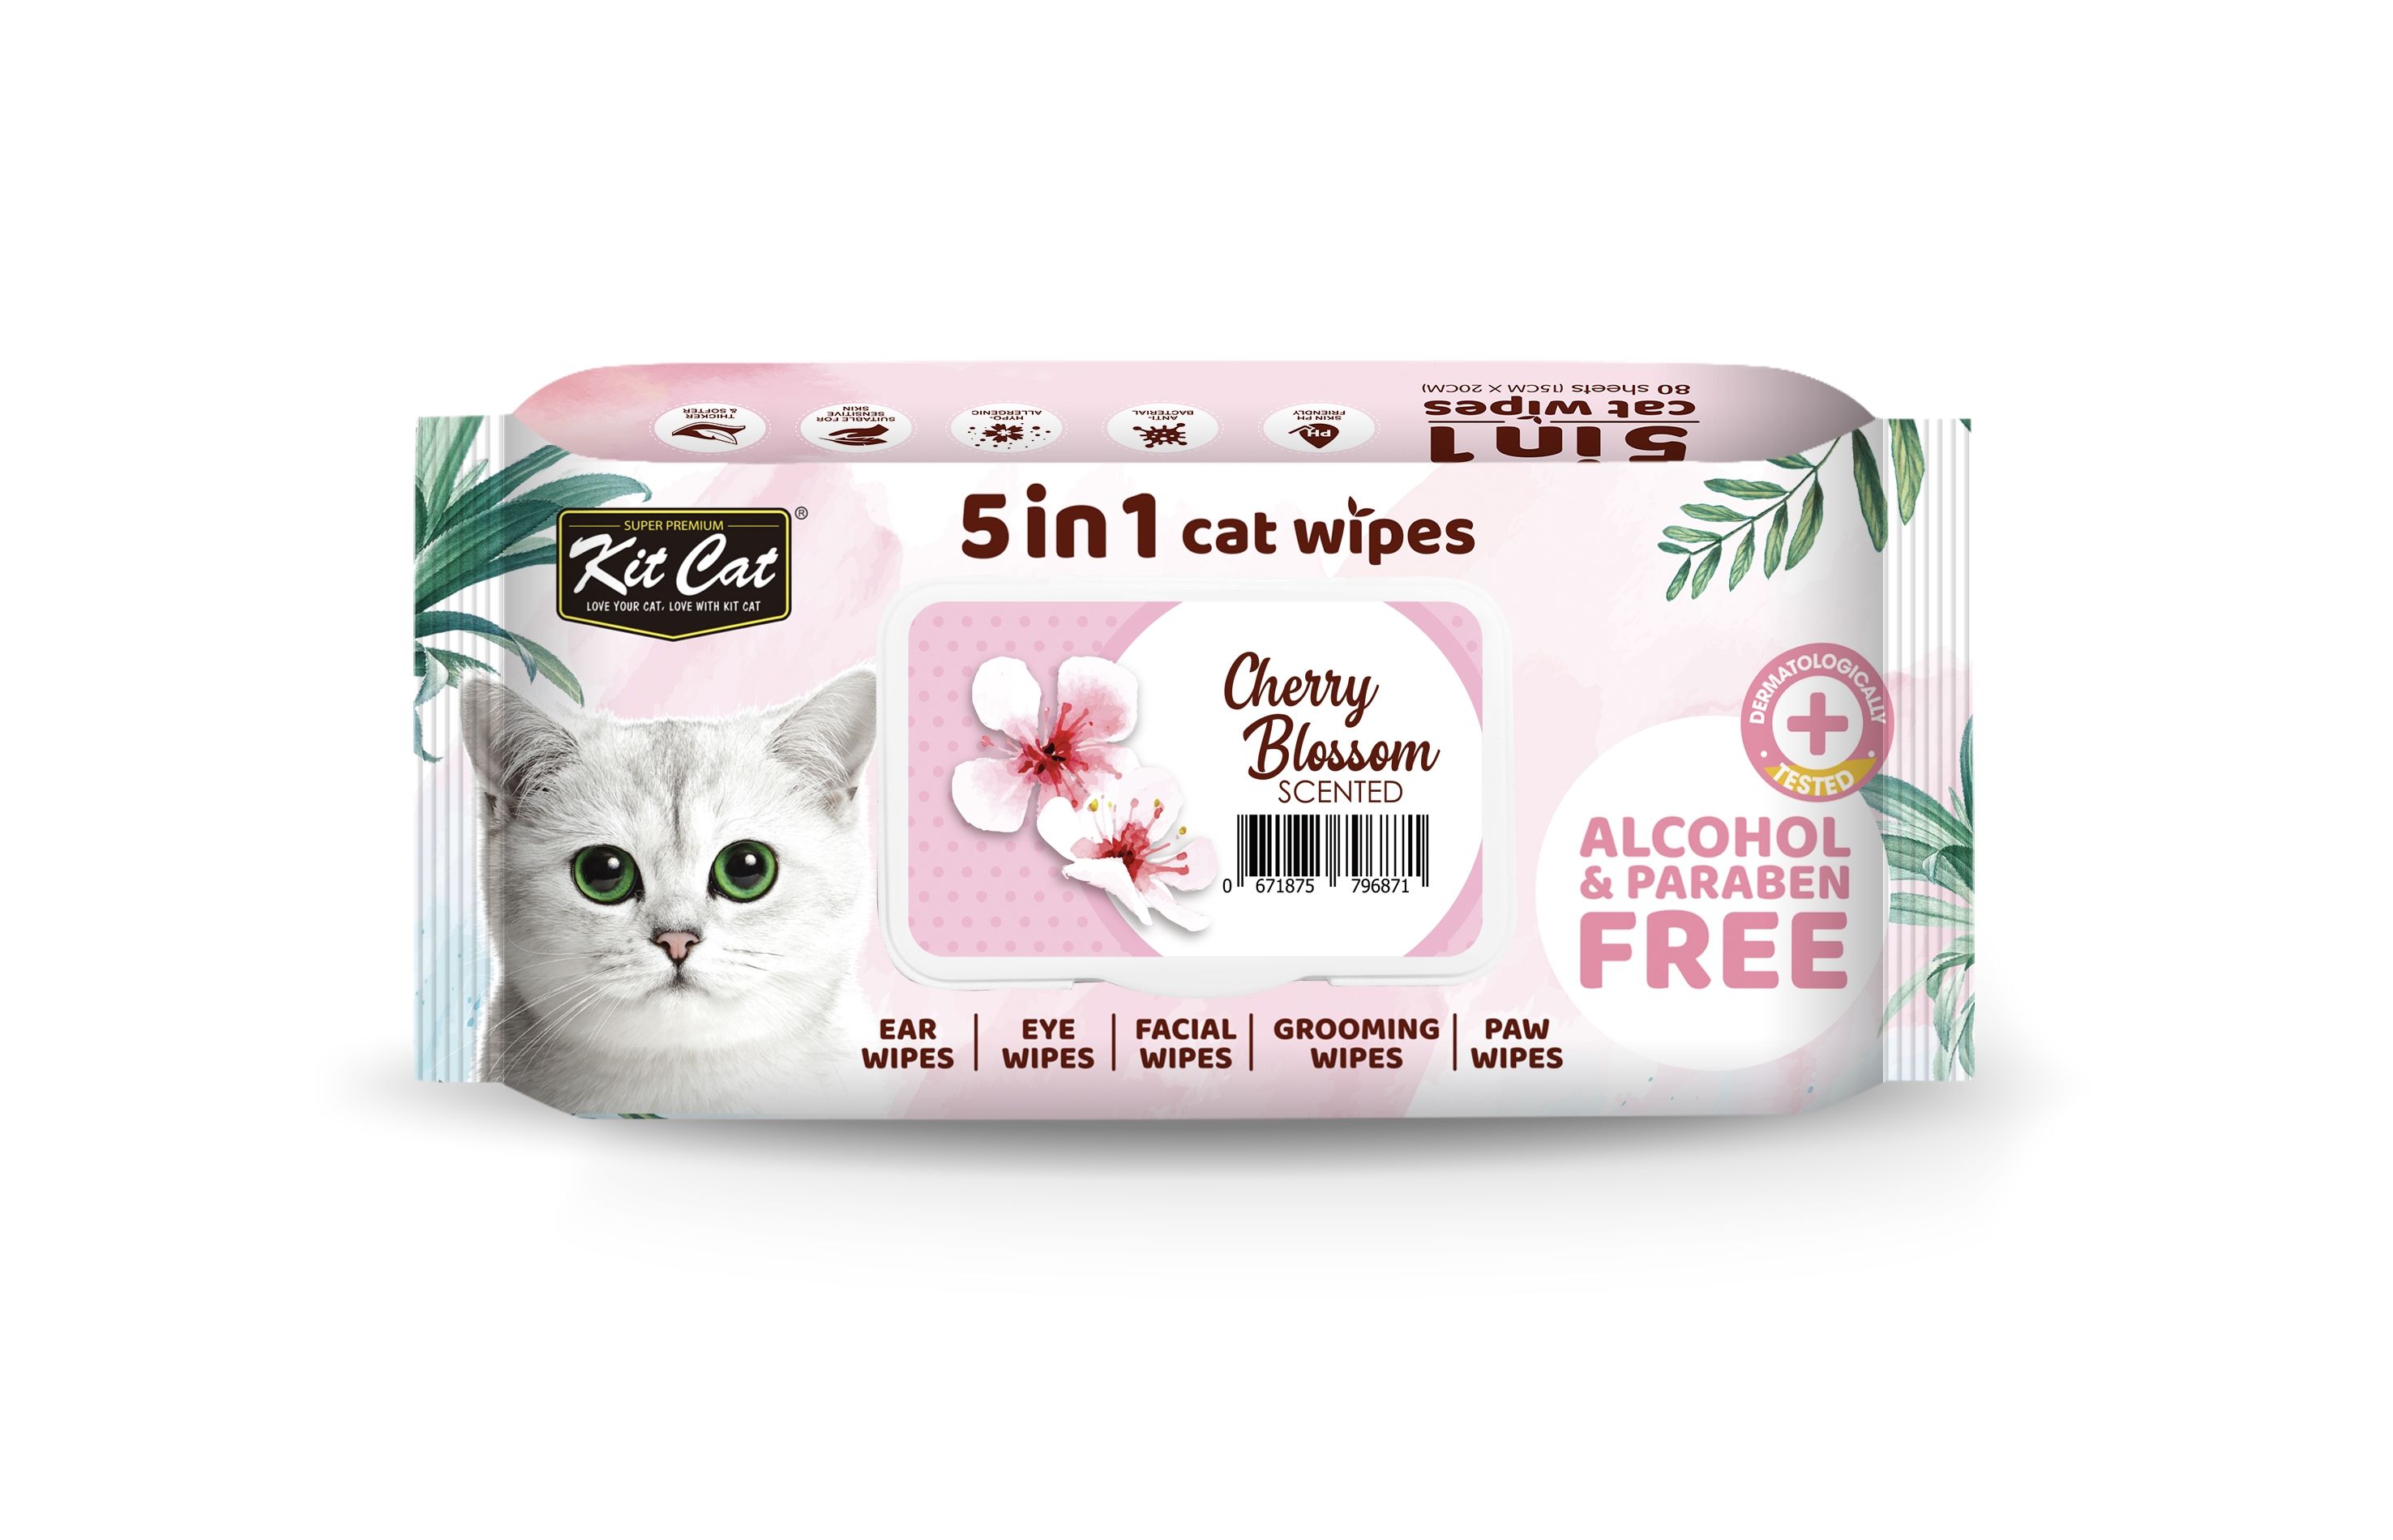 Servetele umede pentru pisici, Kit Cat 5in1 Cherry Blossom, 80 buc 5in1